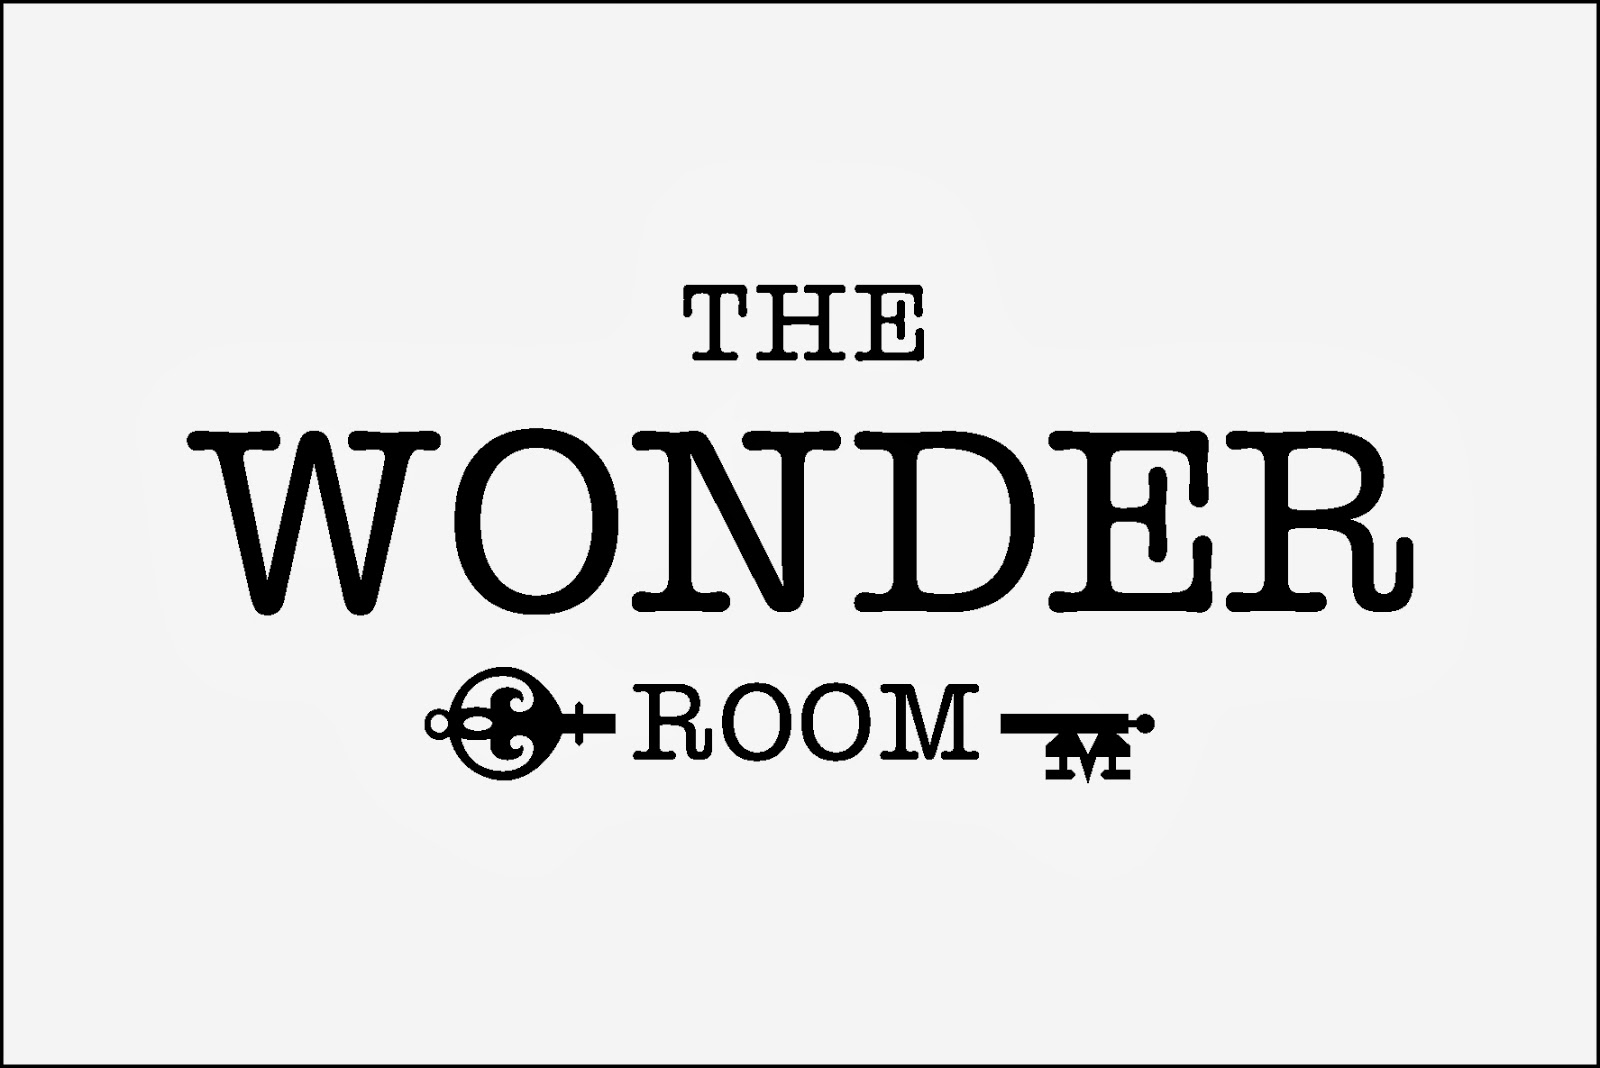 Wonder rooms